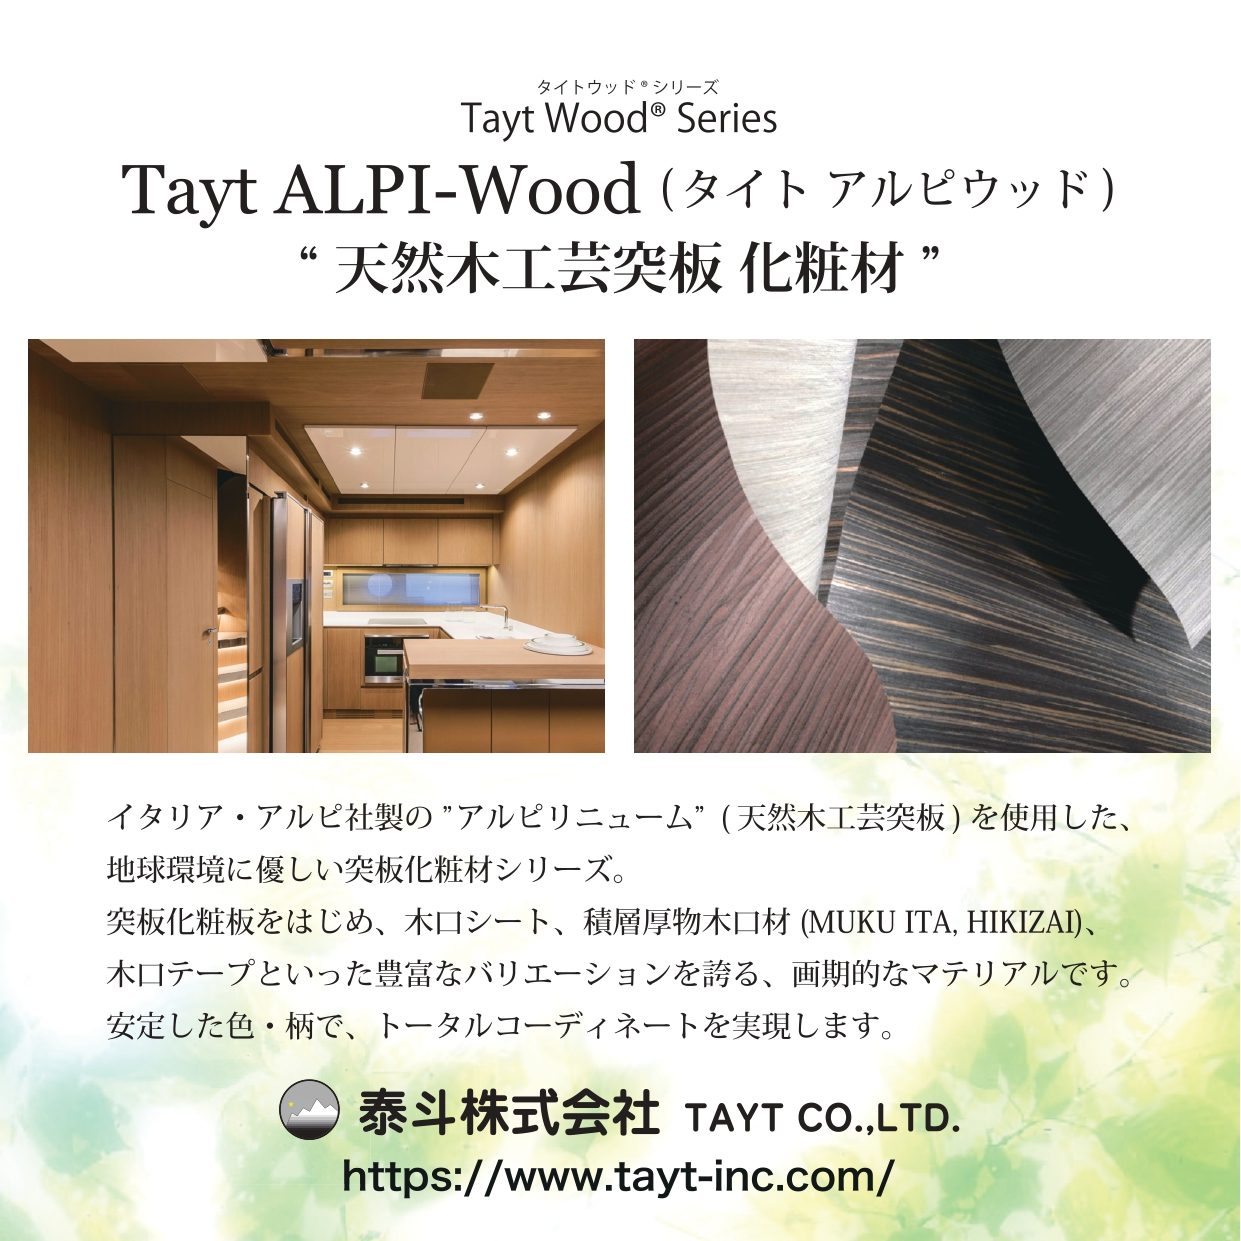 T-3055-0 天然木工芸突板化粧板 タイト アルピウッド ホワイトオーク柾 4.0mm×3尺×8尺 クリアー